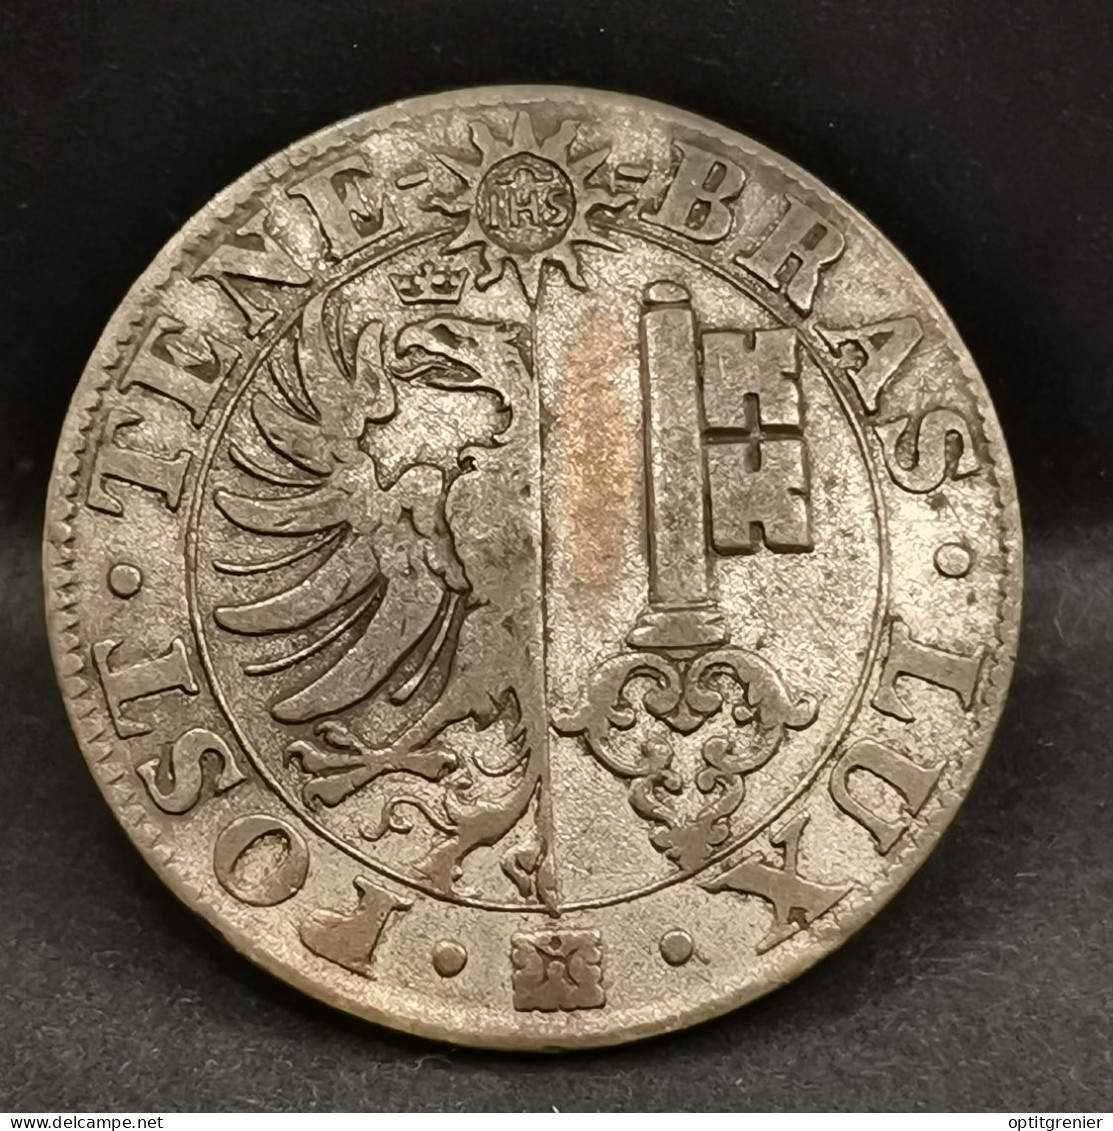 25 CENTIMES 1839 BILLON ARGENT CANTON DE GENEVE SUISSE / SWITZERLAND - Monnaies Cantonales